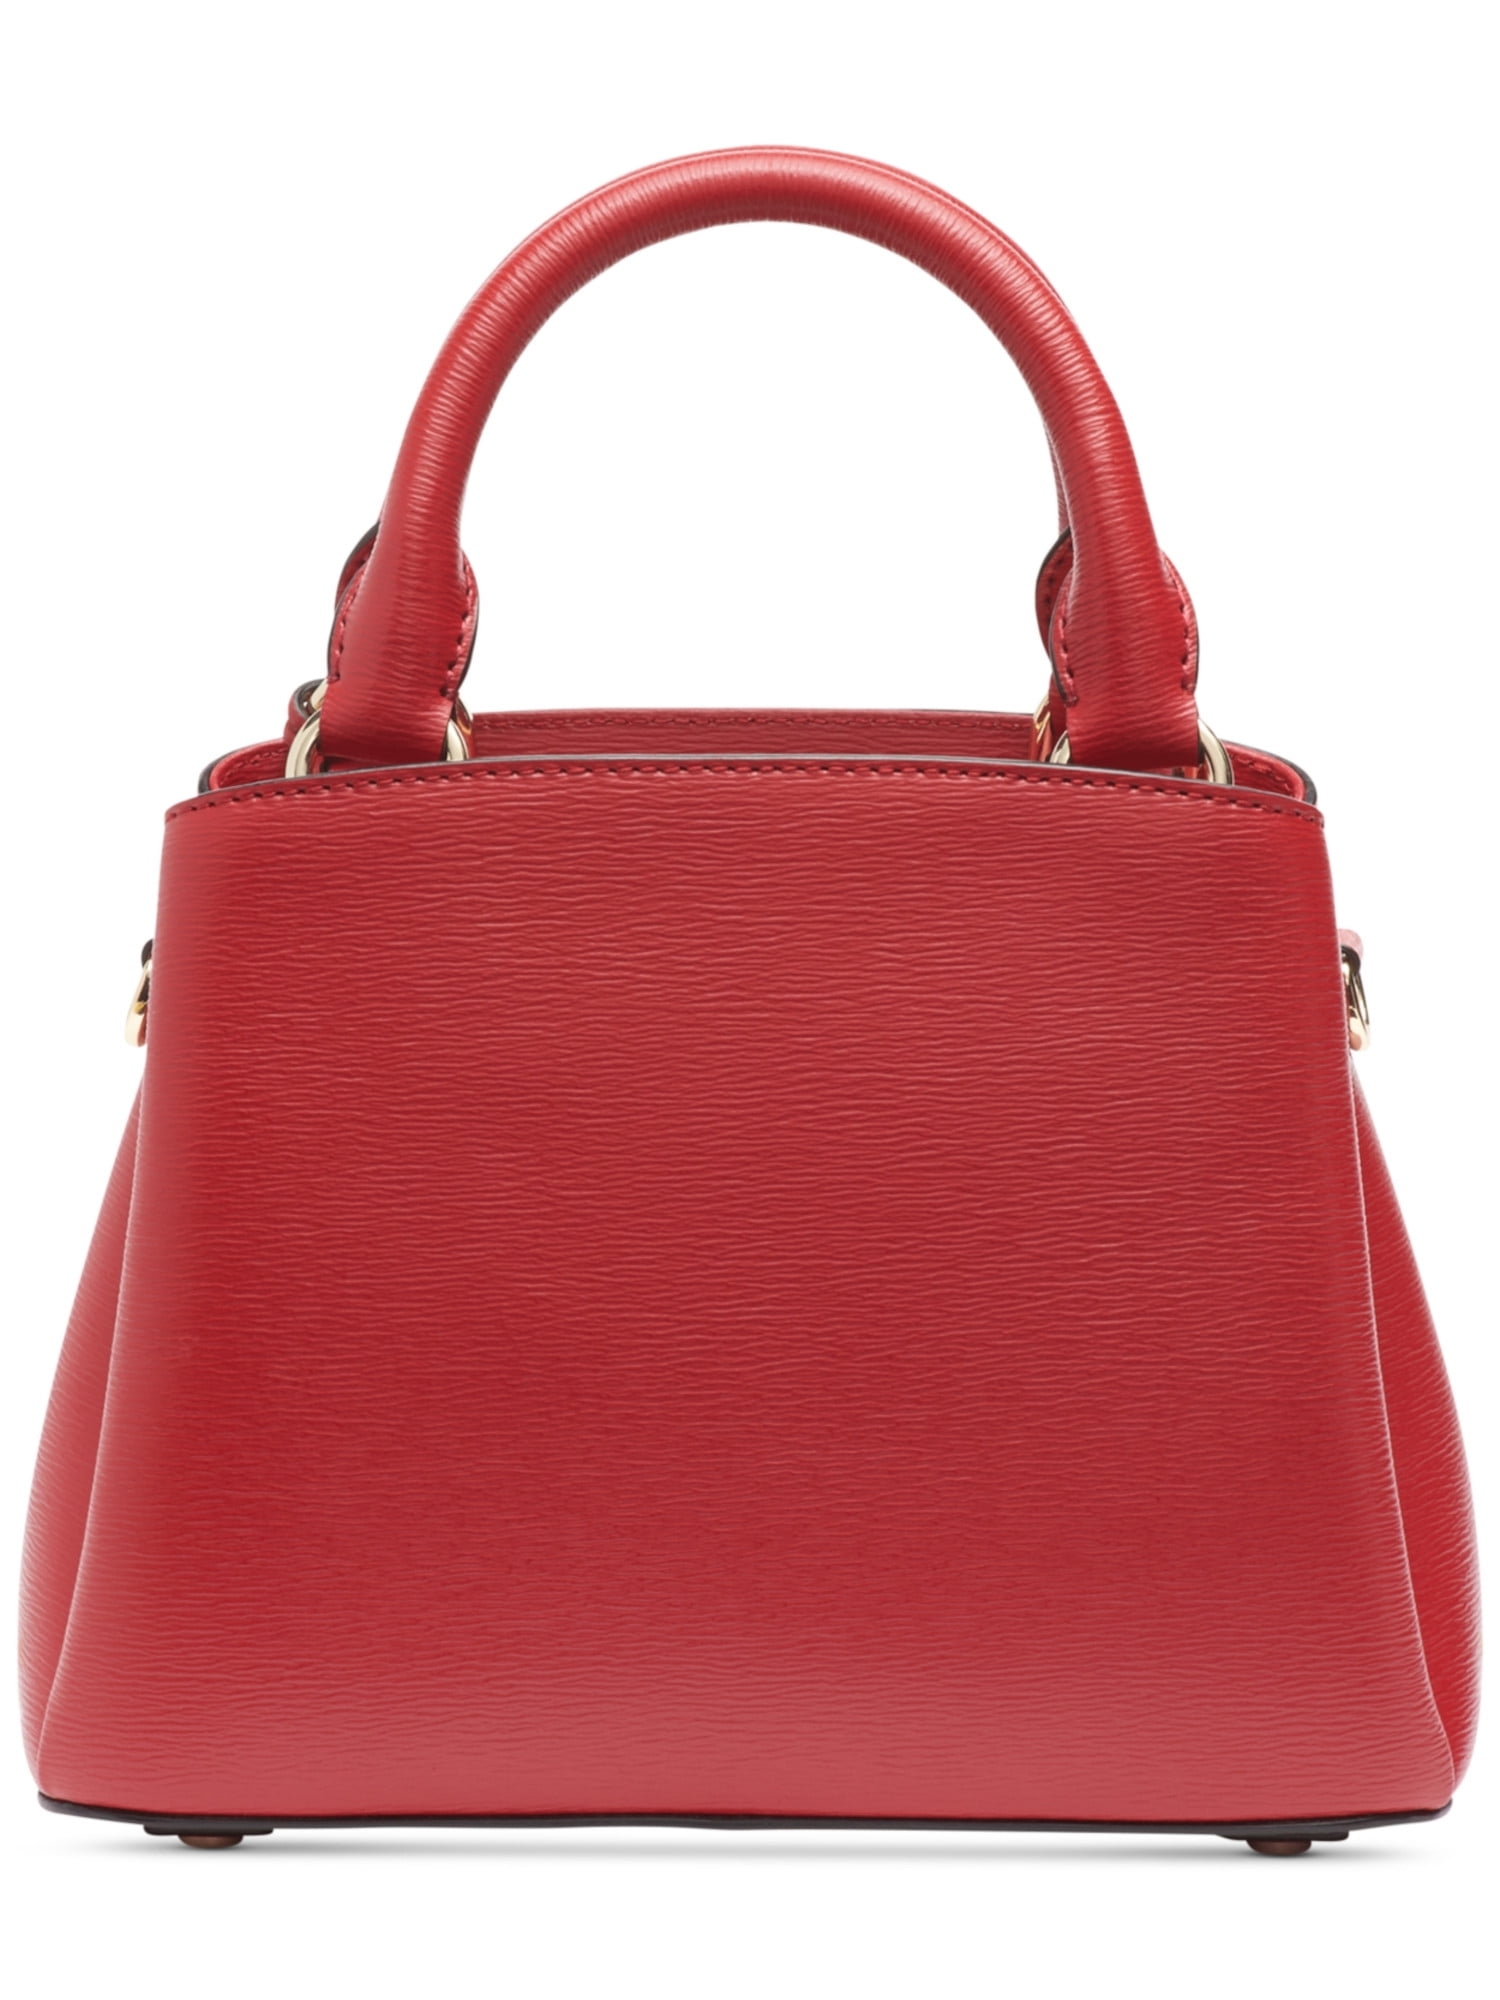 THE VAULT FILES | Classic black handbag, Fashion bags, Black handbags